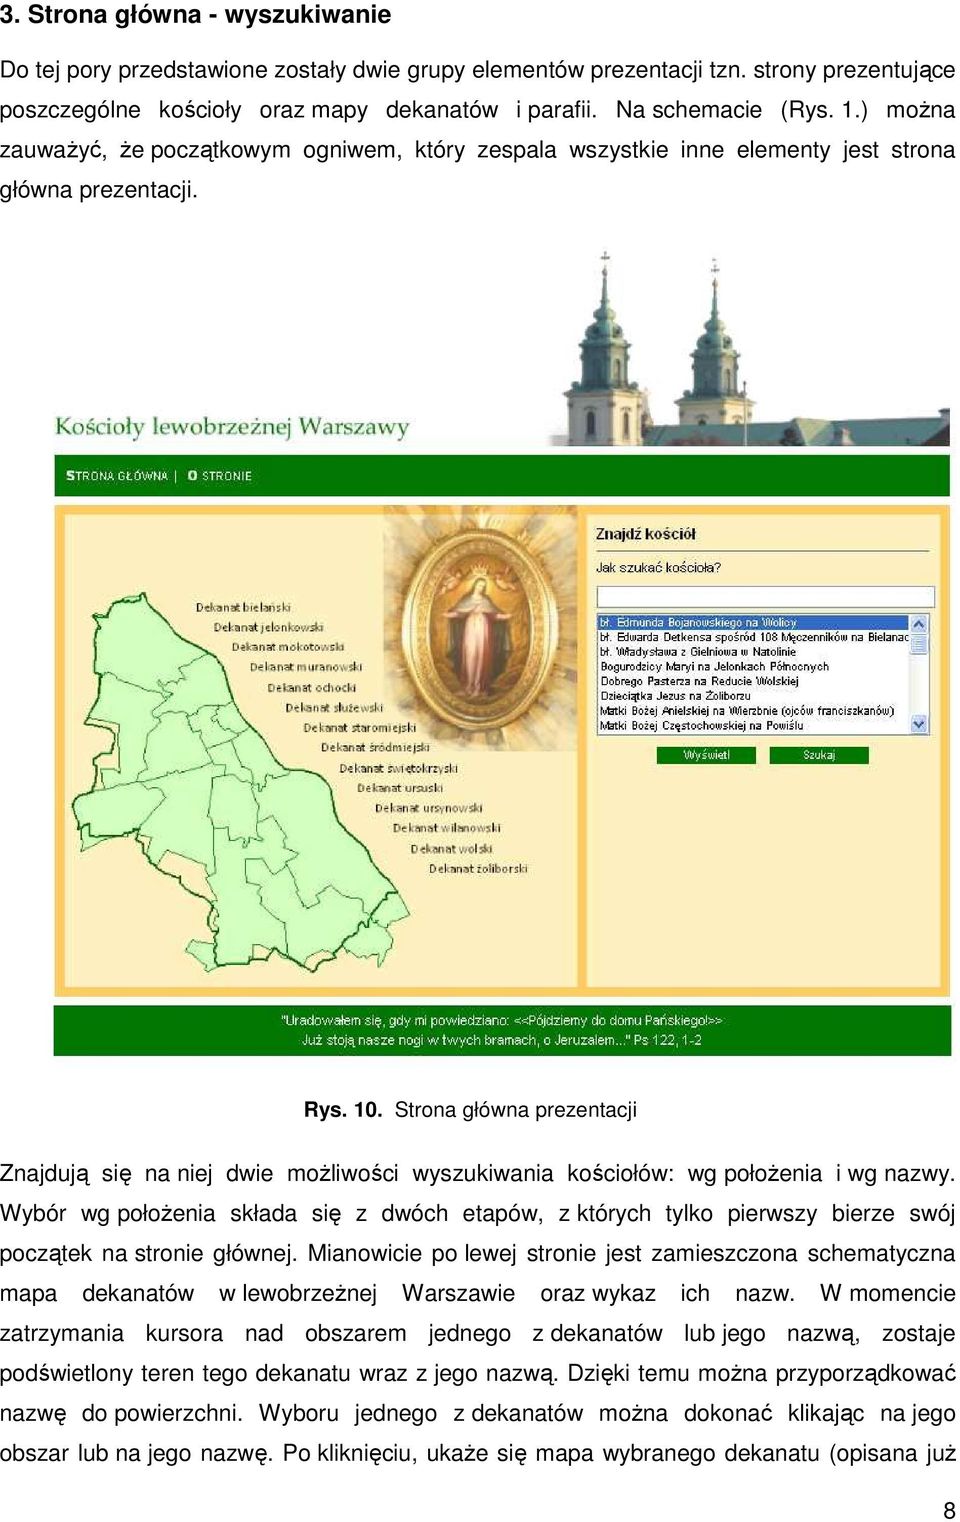 Strona główna prezentacji Znajdują się na niej dwie moŝliwości wyszukiwania kościołów: wg połoŝenia i wg nazwy.